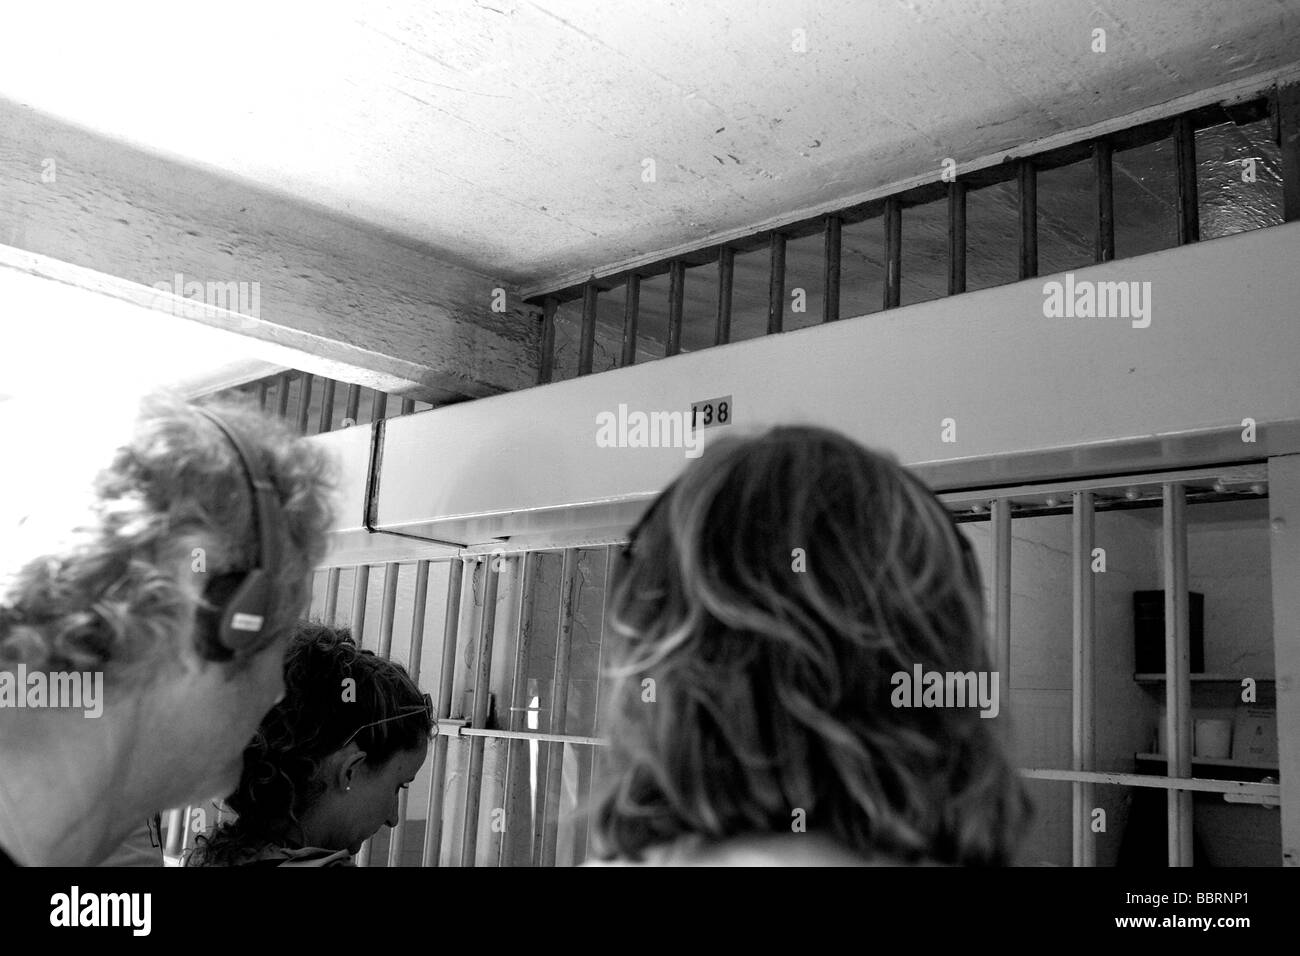 Les visiteurs à la recherche dans la cellule 138 dans le pénitencier d'Alcatraz. C'est la cellule à partir de laquelle Frank Morris s'est échappé en 1962. Banque D'Images